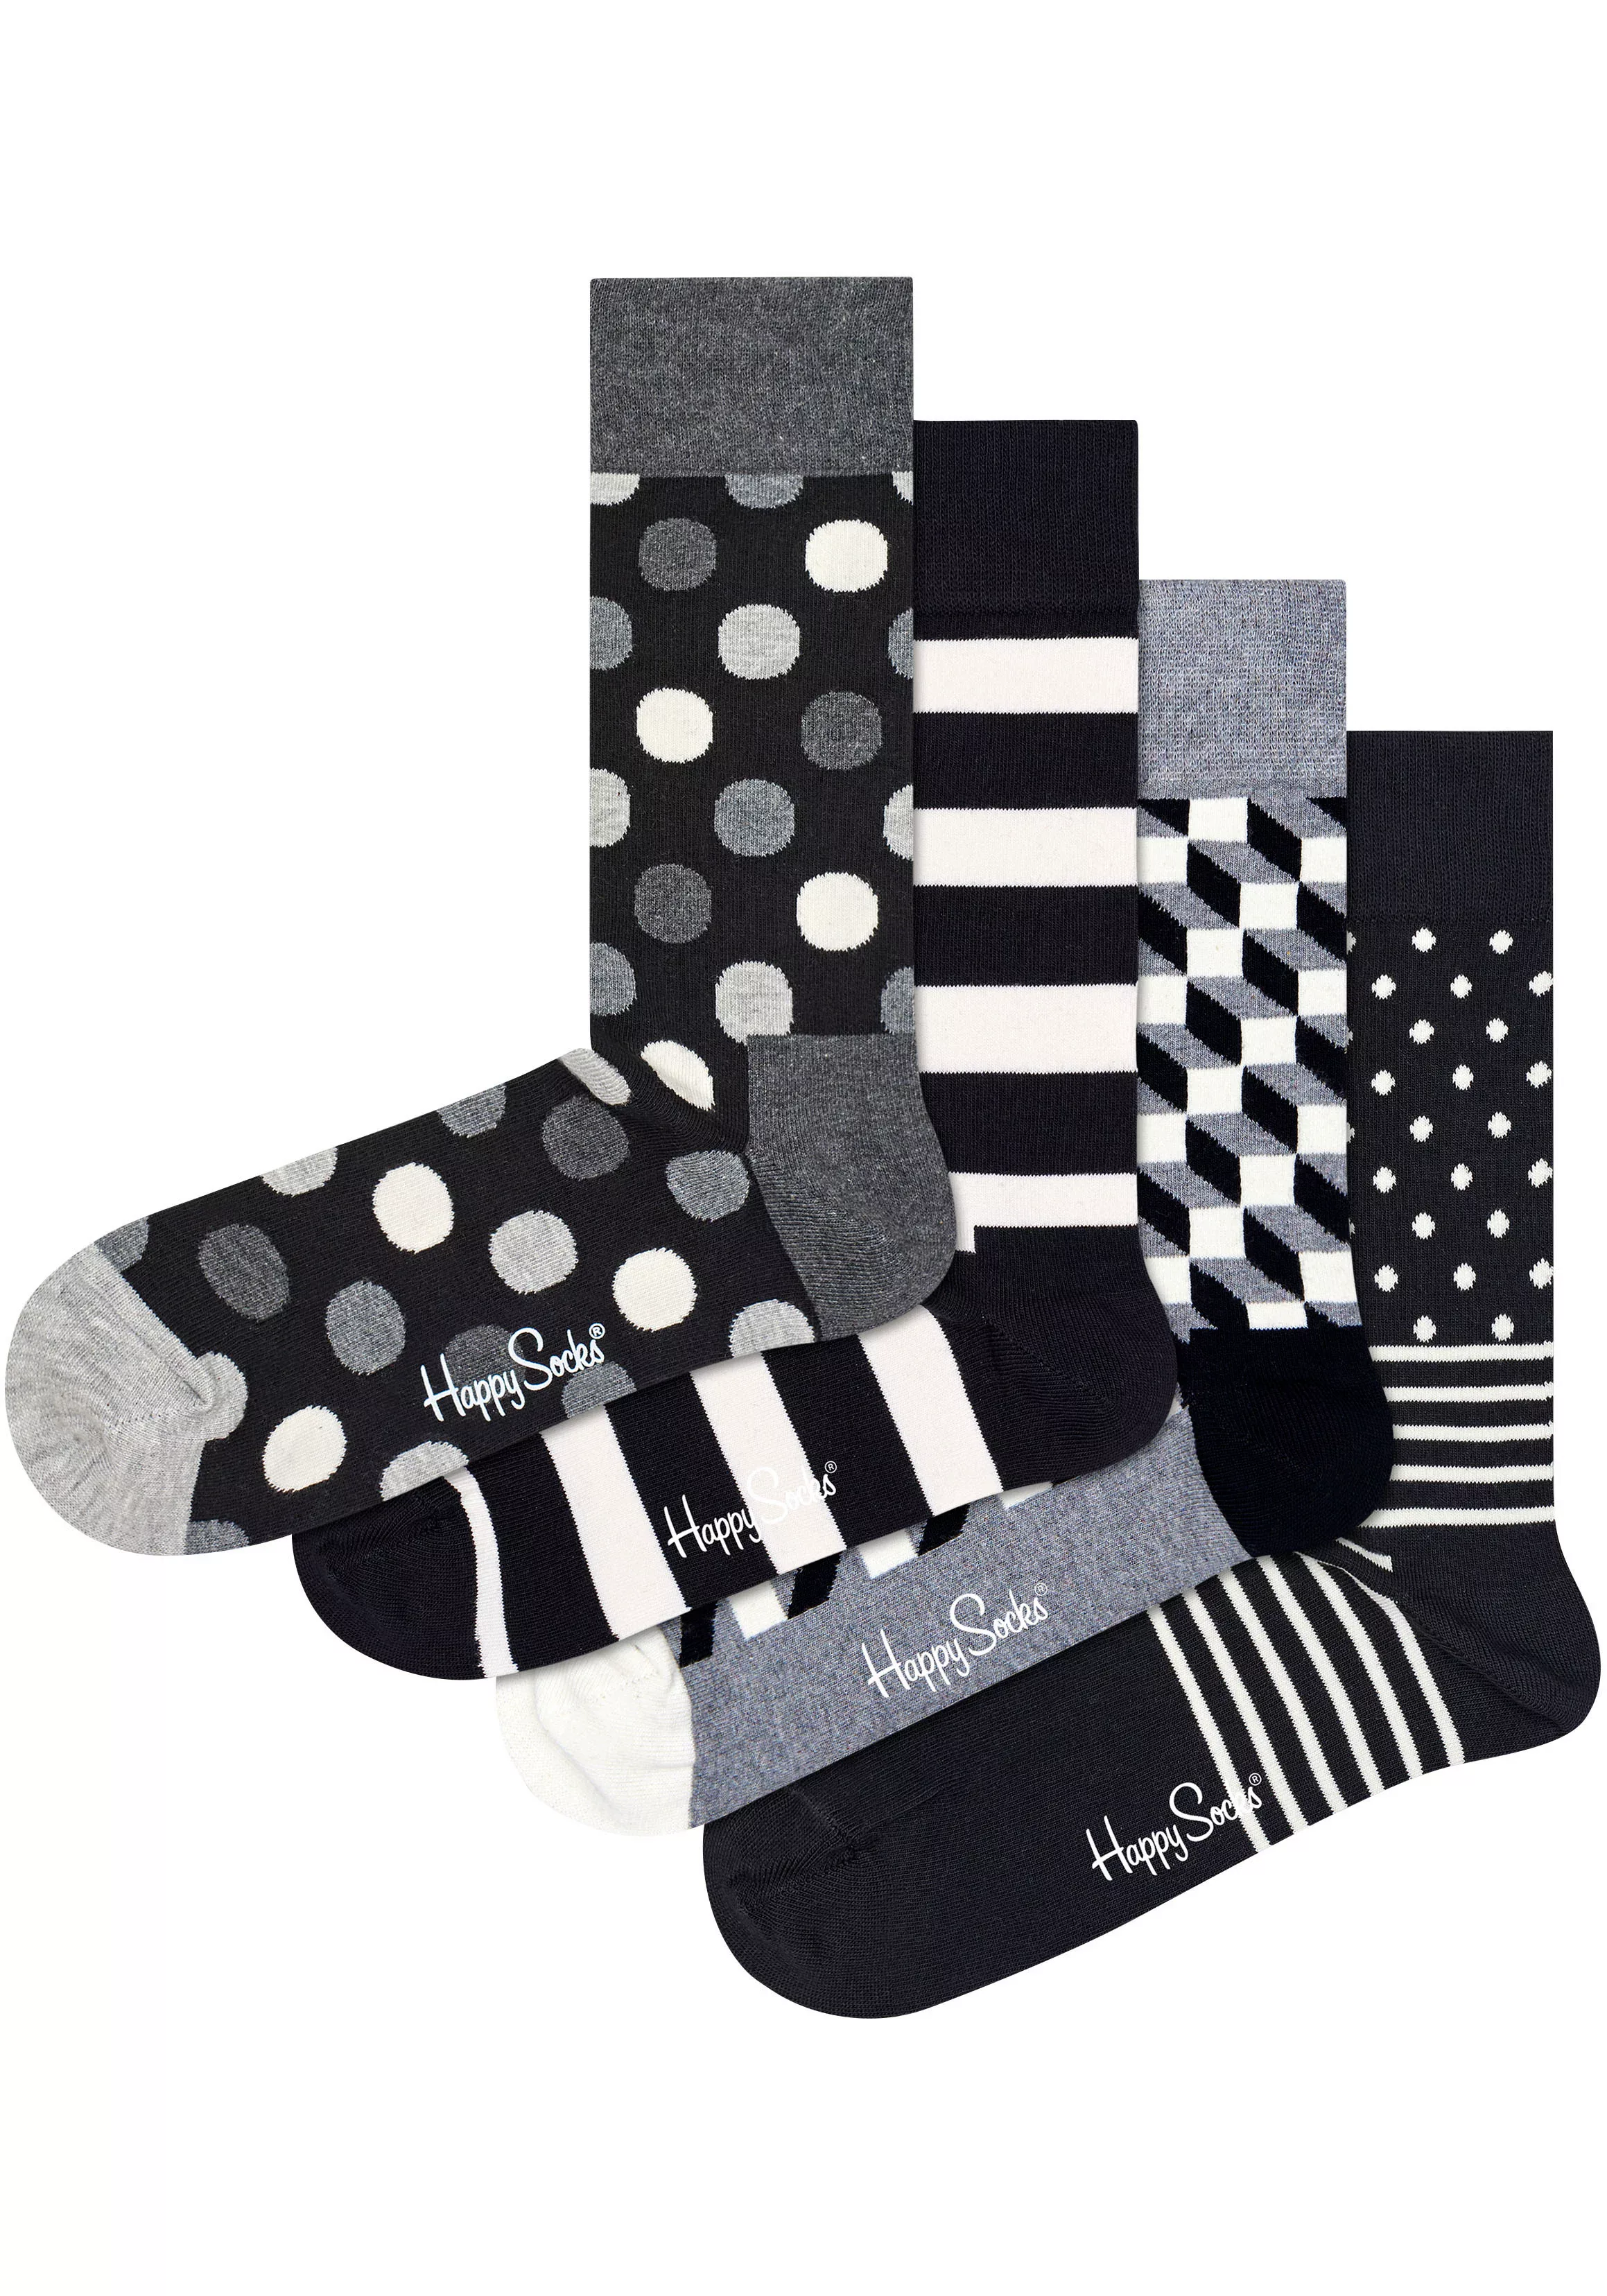 Happy Socks Socken, (Packung, 4 Paar), Classic Black & White Socks Gift Set günstig online kaufen